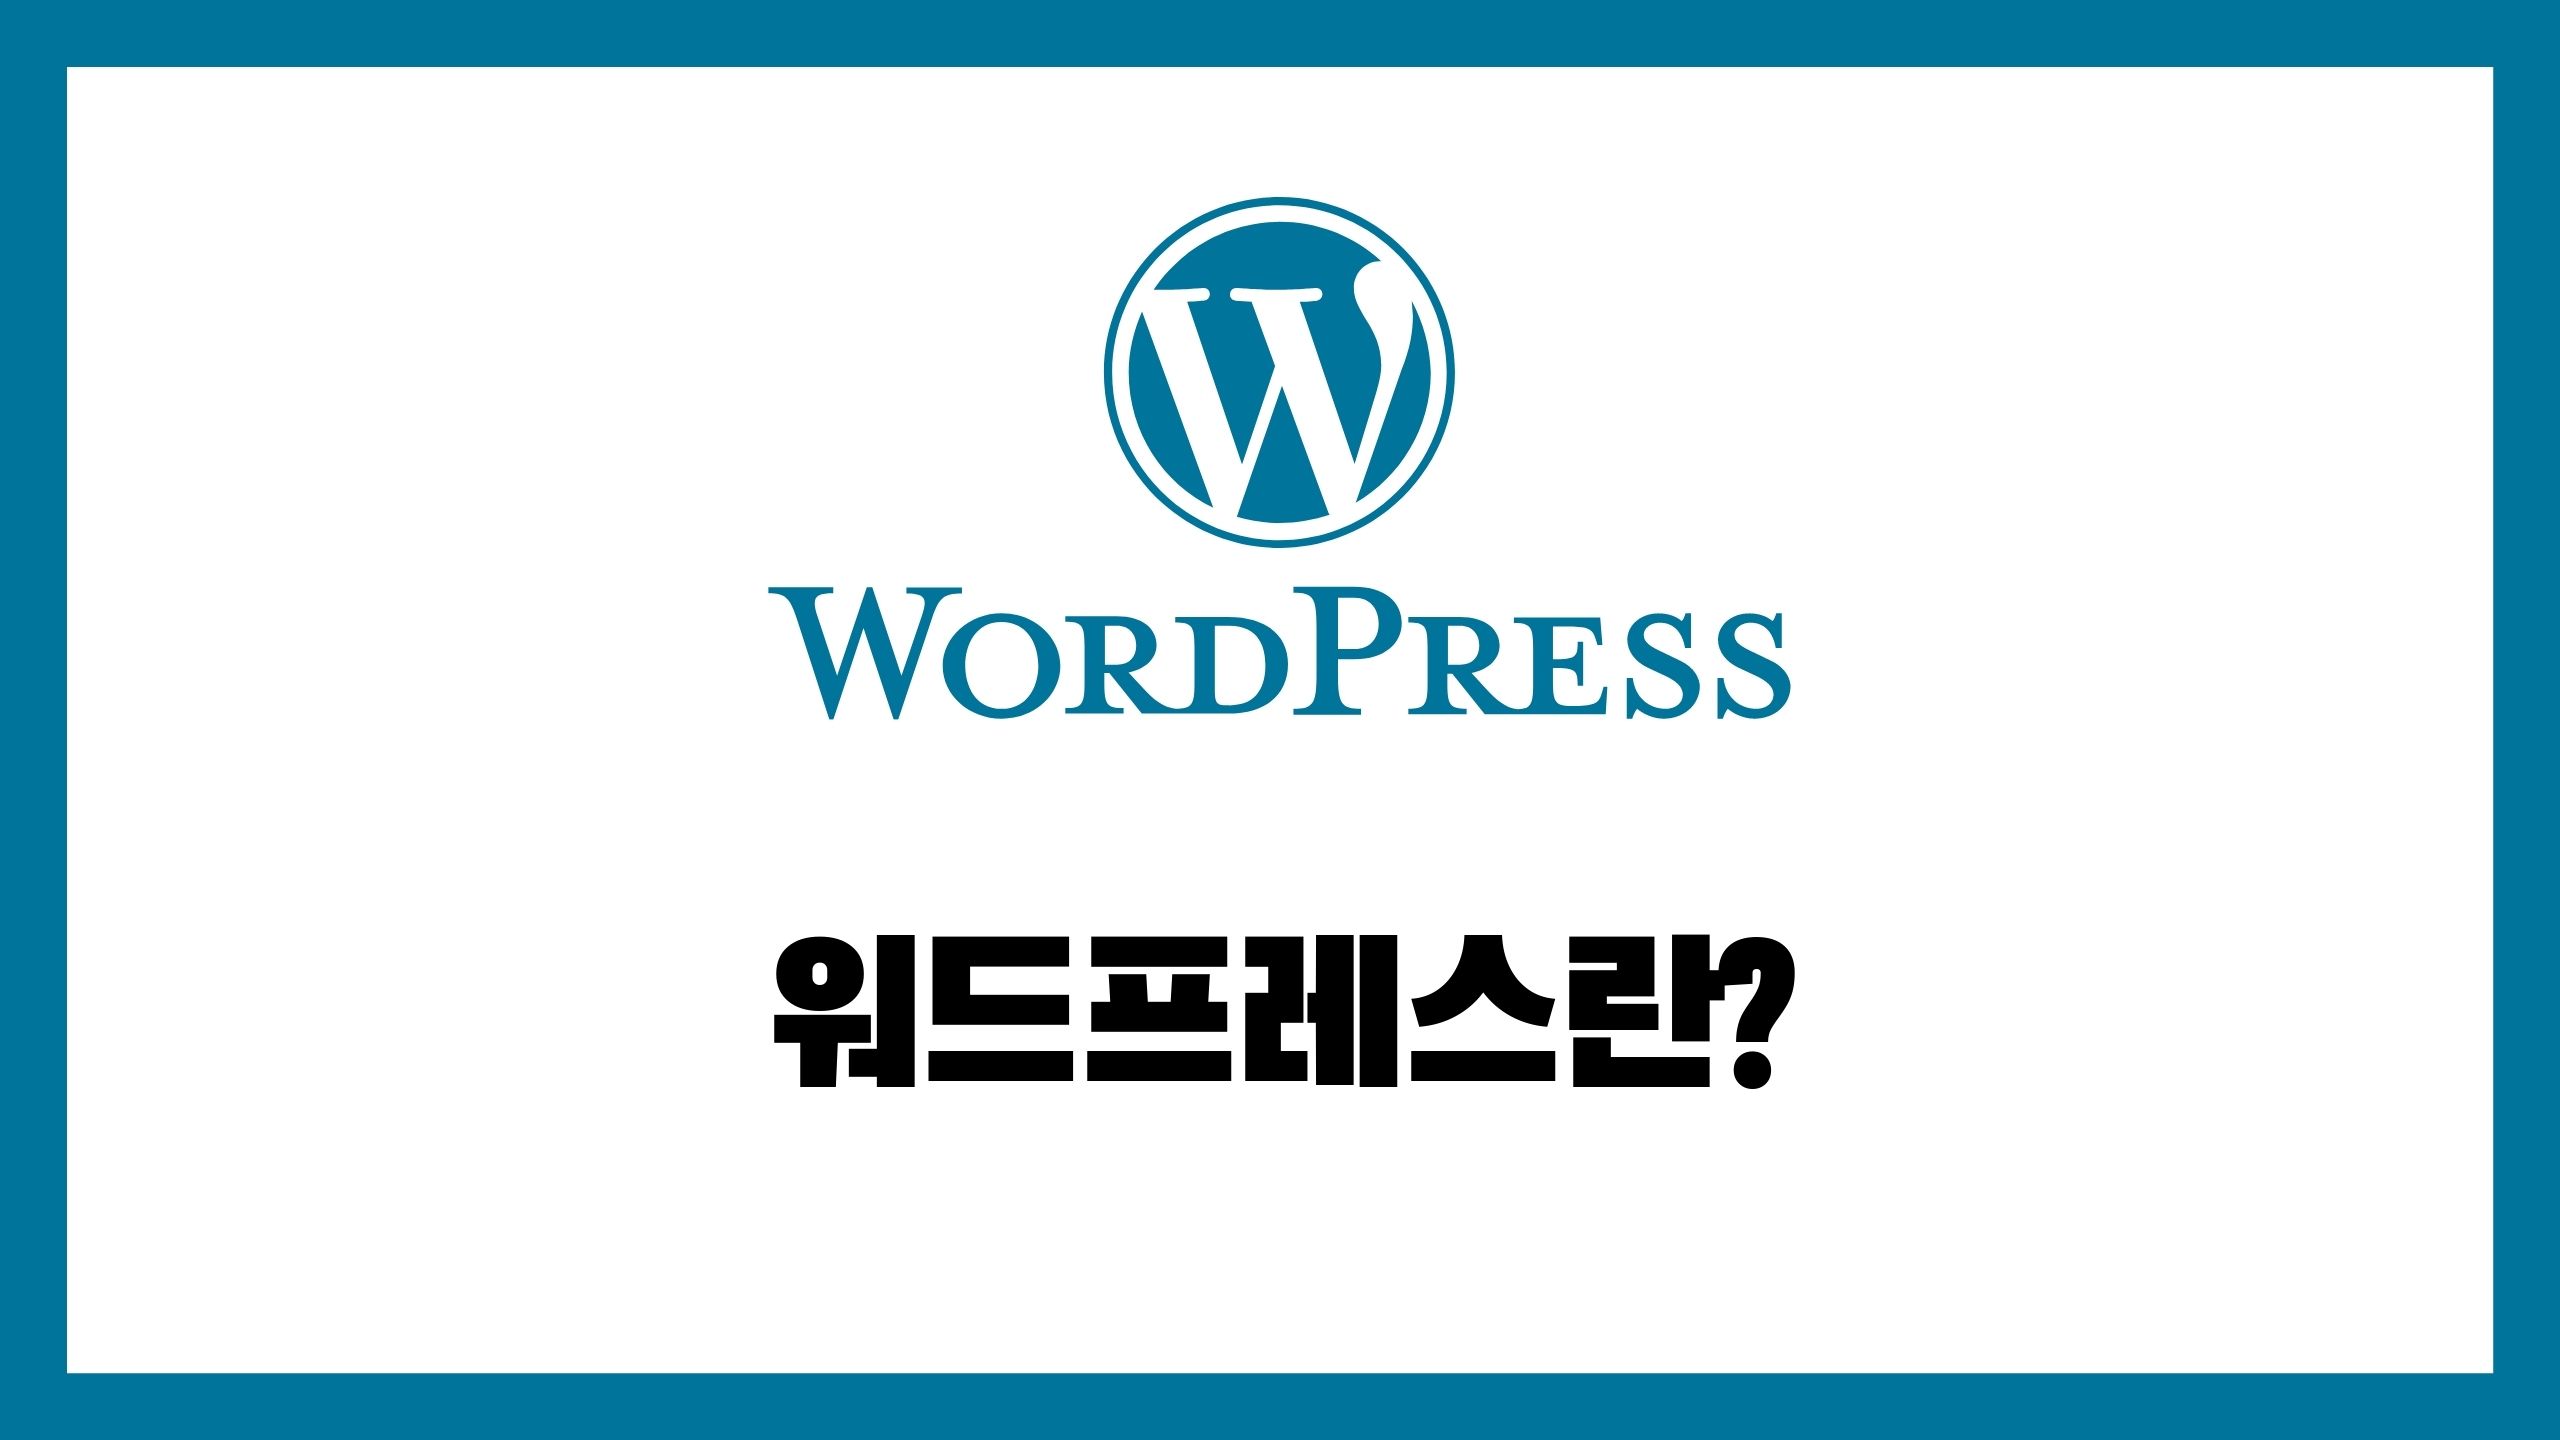 스몰팁스 - 워드프레스 홈페이지(블로그) 제작, 검색엔진최적화 Seo 및 추천 가이드